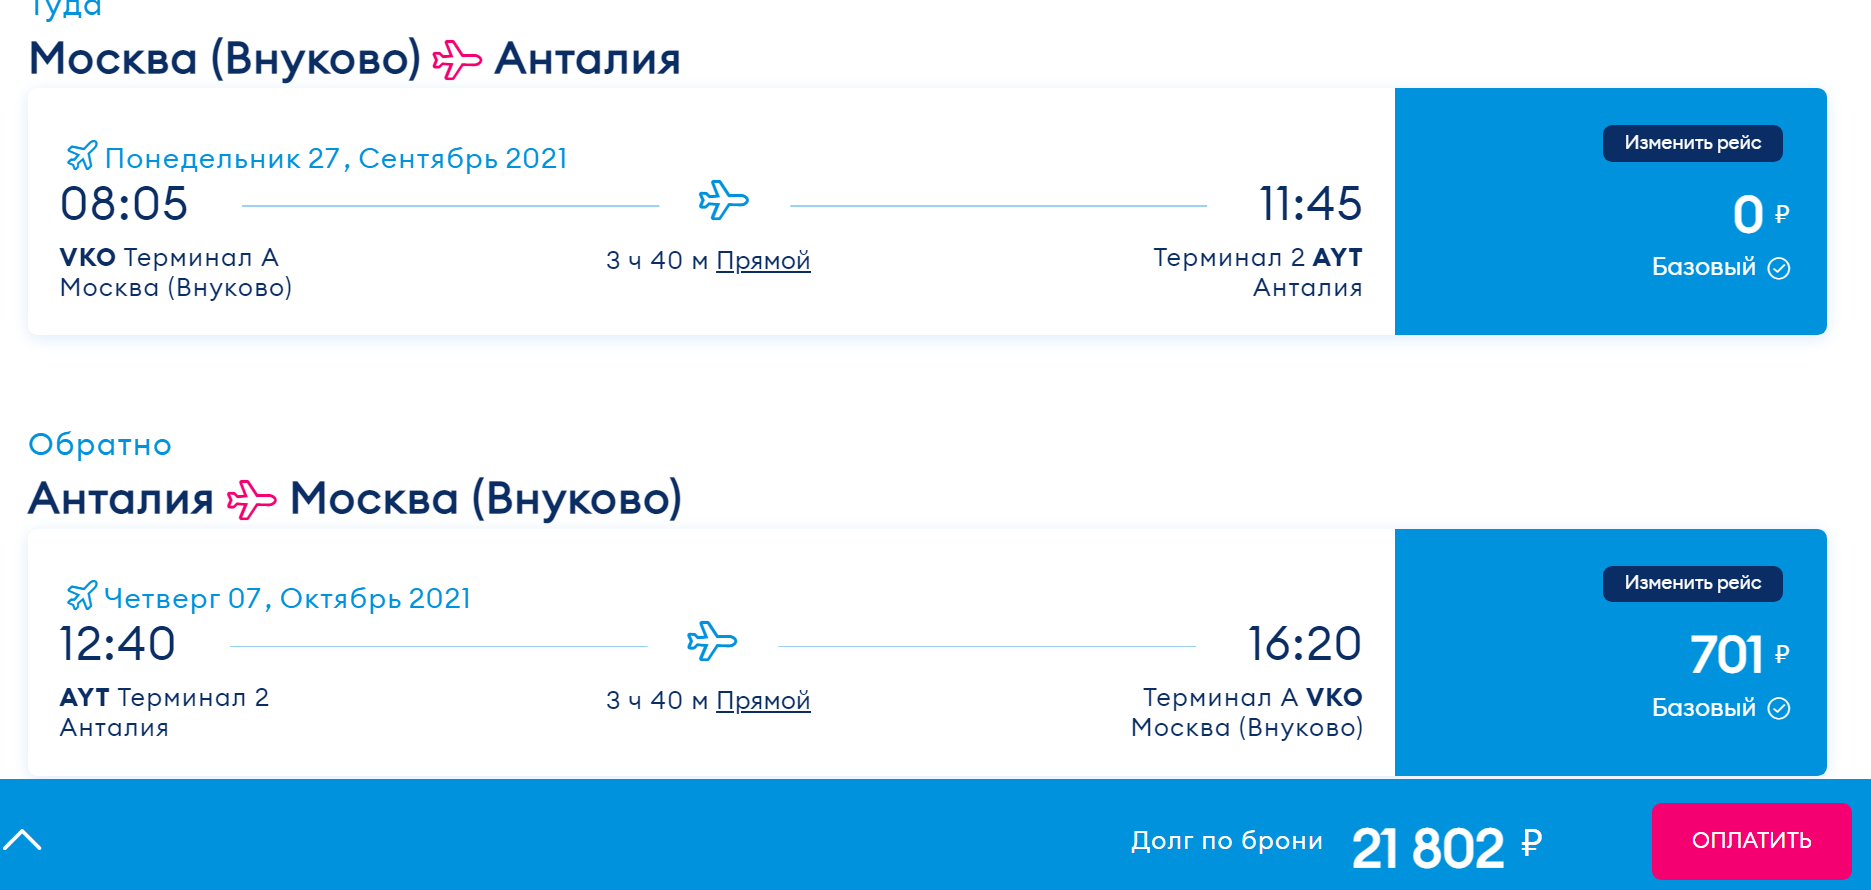 Авиабилеты победа обменять самолет красноярск абхазия билеты